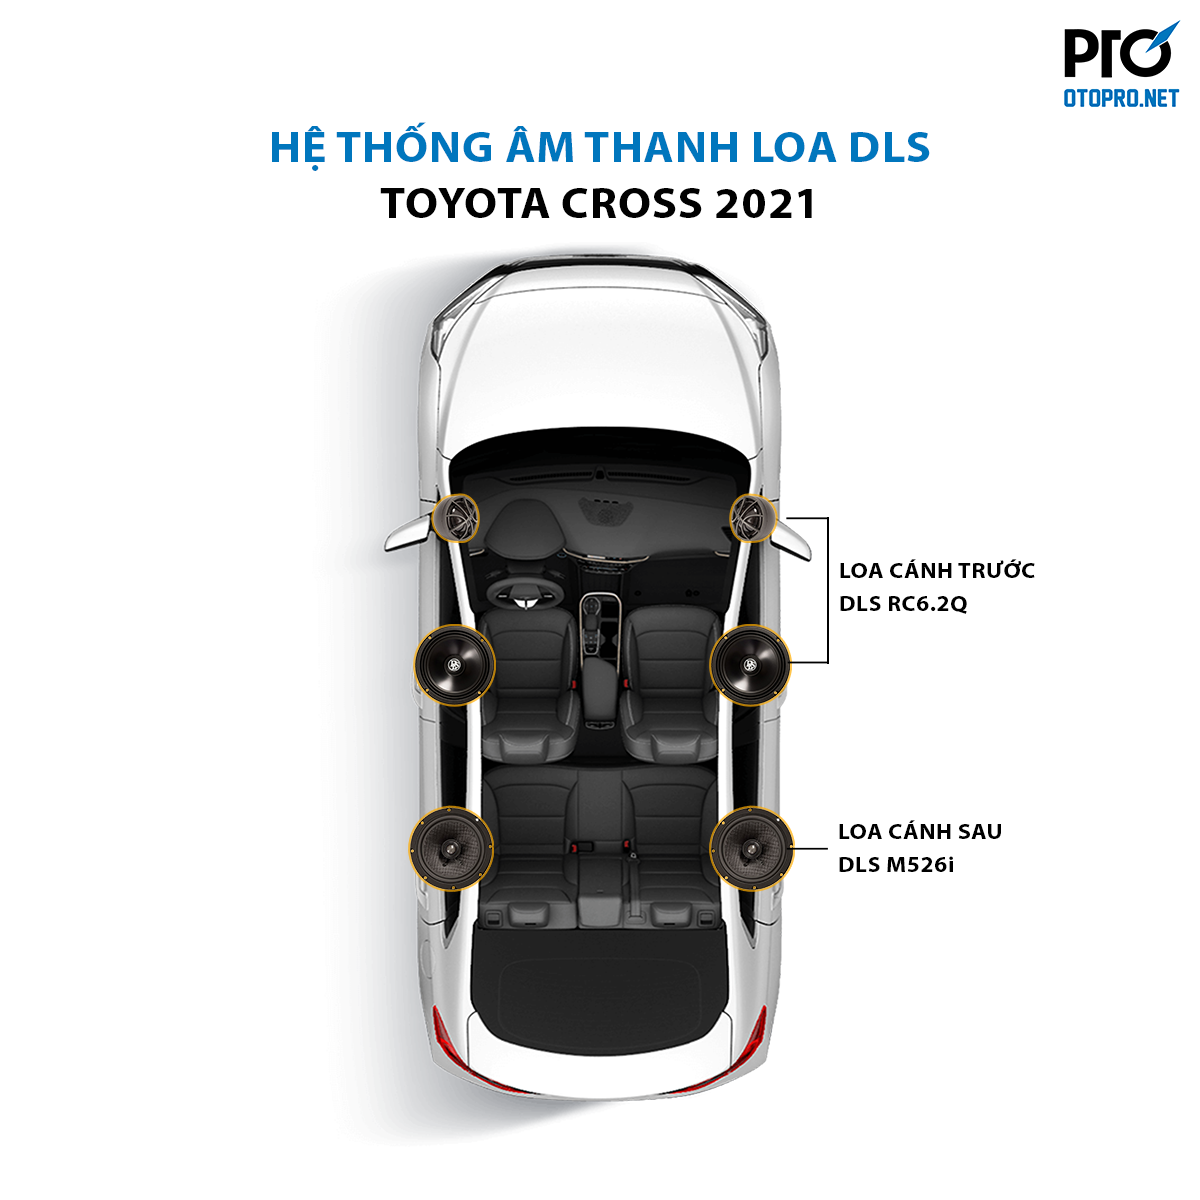 Độ loa Toyota Cross 2021 với cấu hình âm thanh loa DLS RC6.2Q